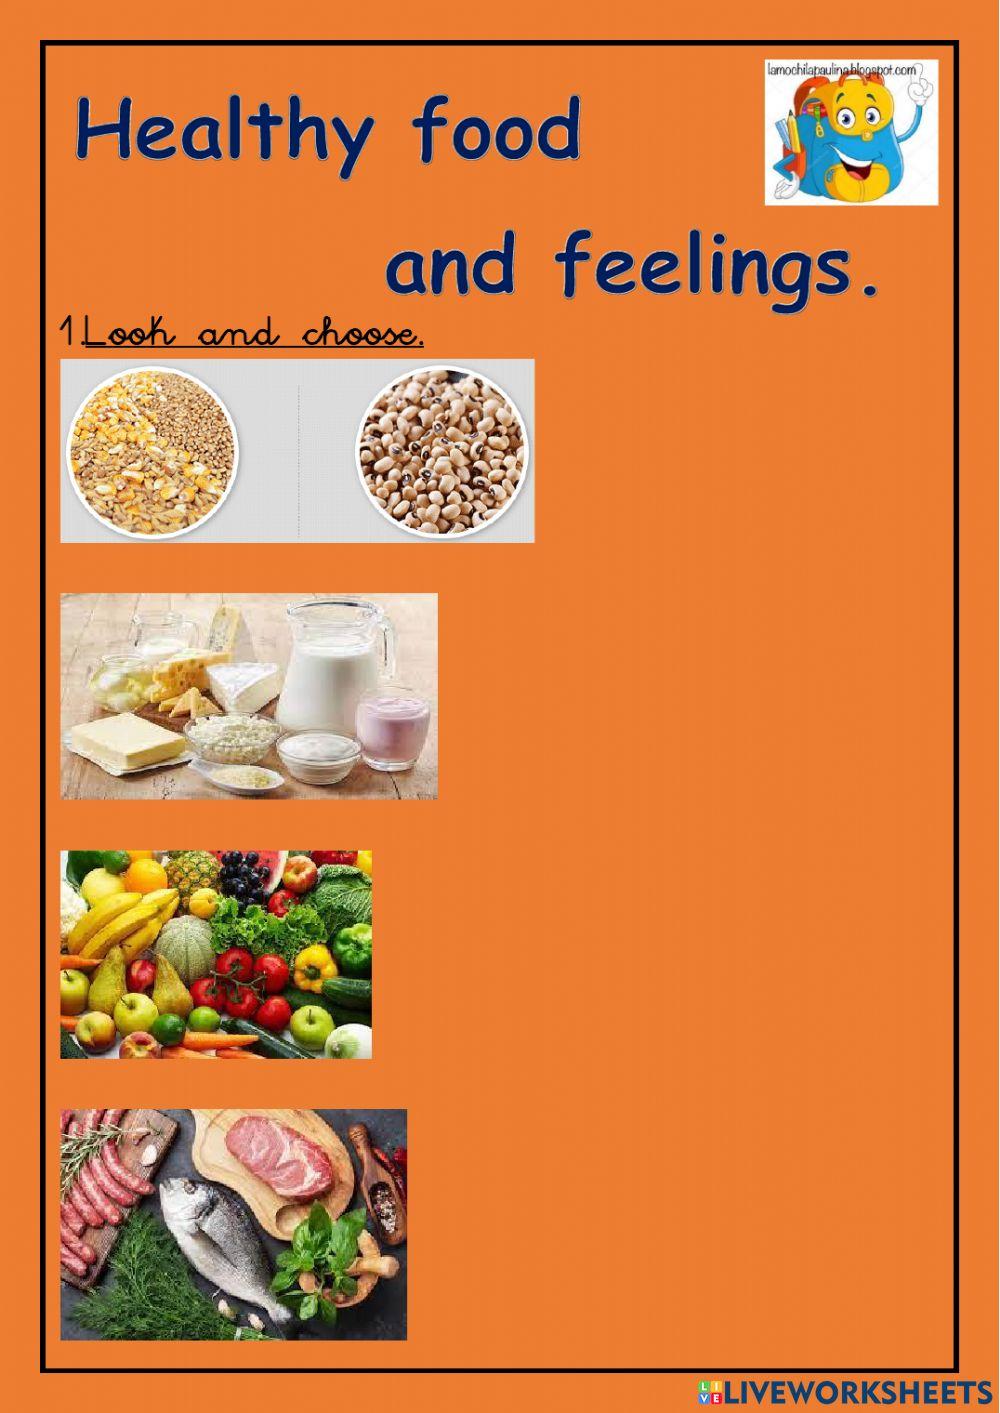 Healthy food and feelings.